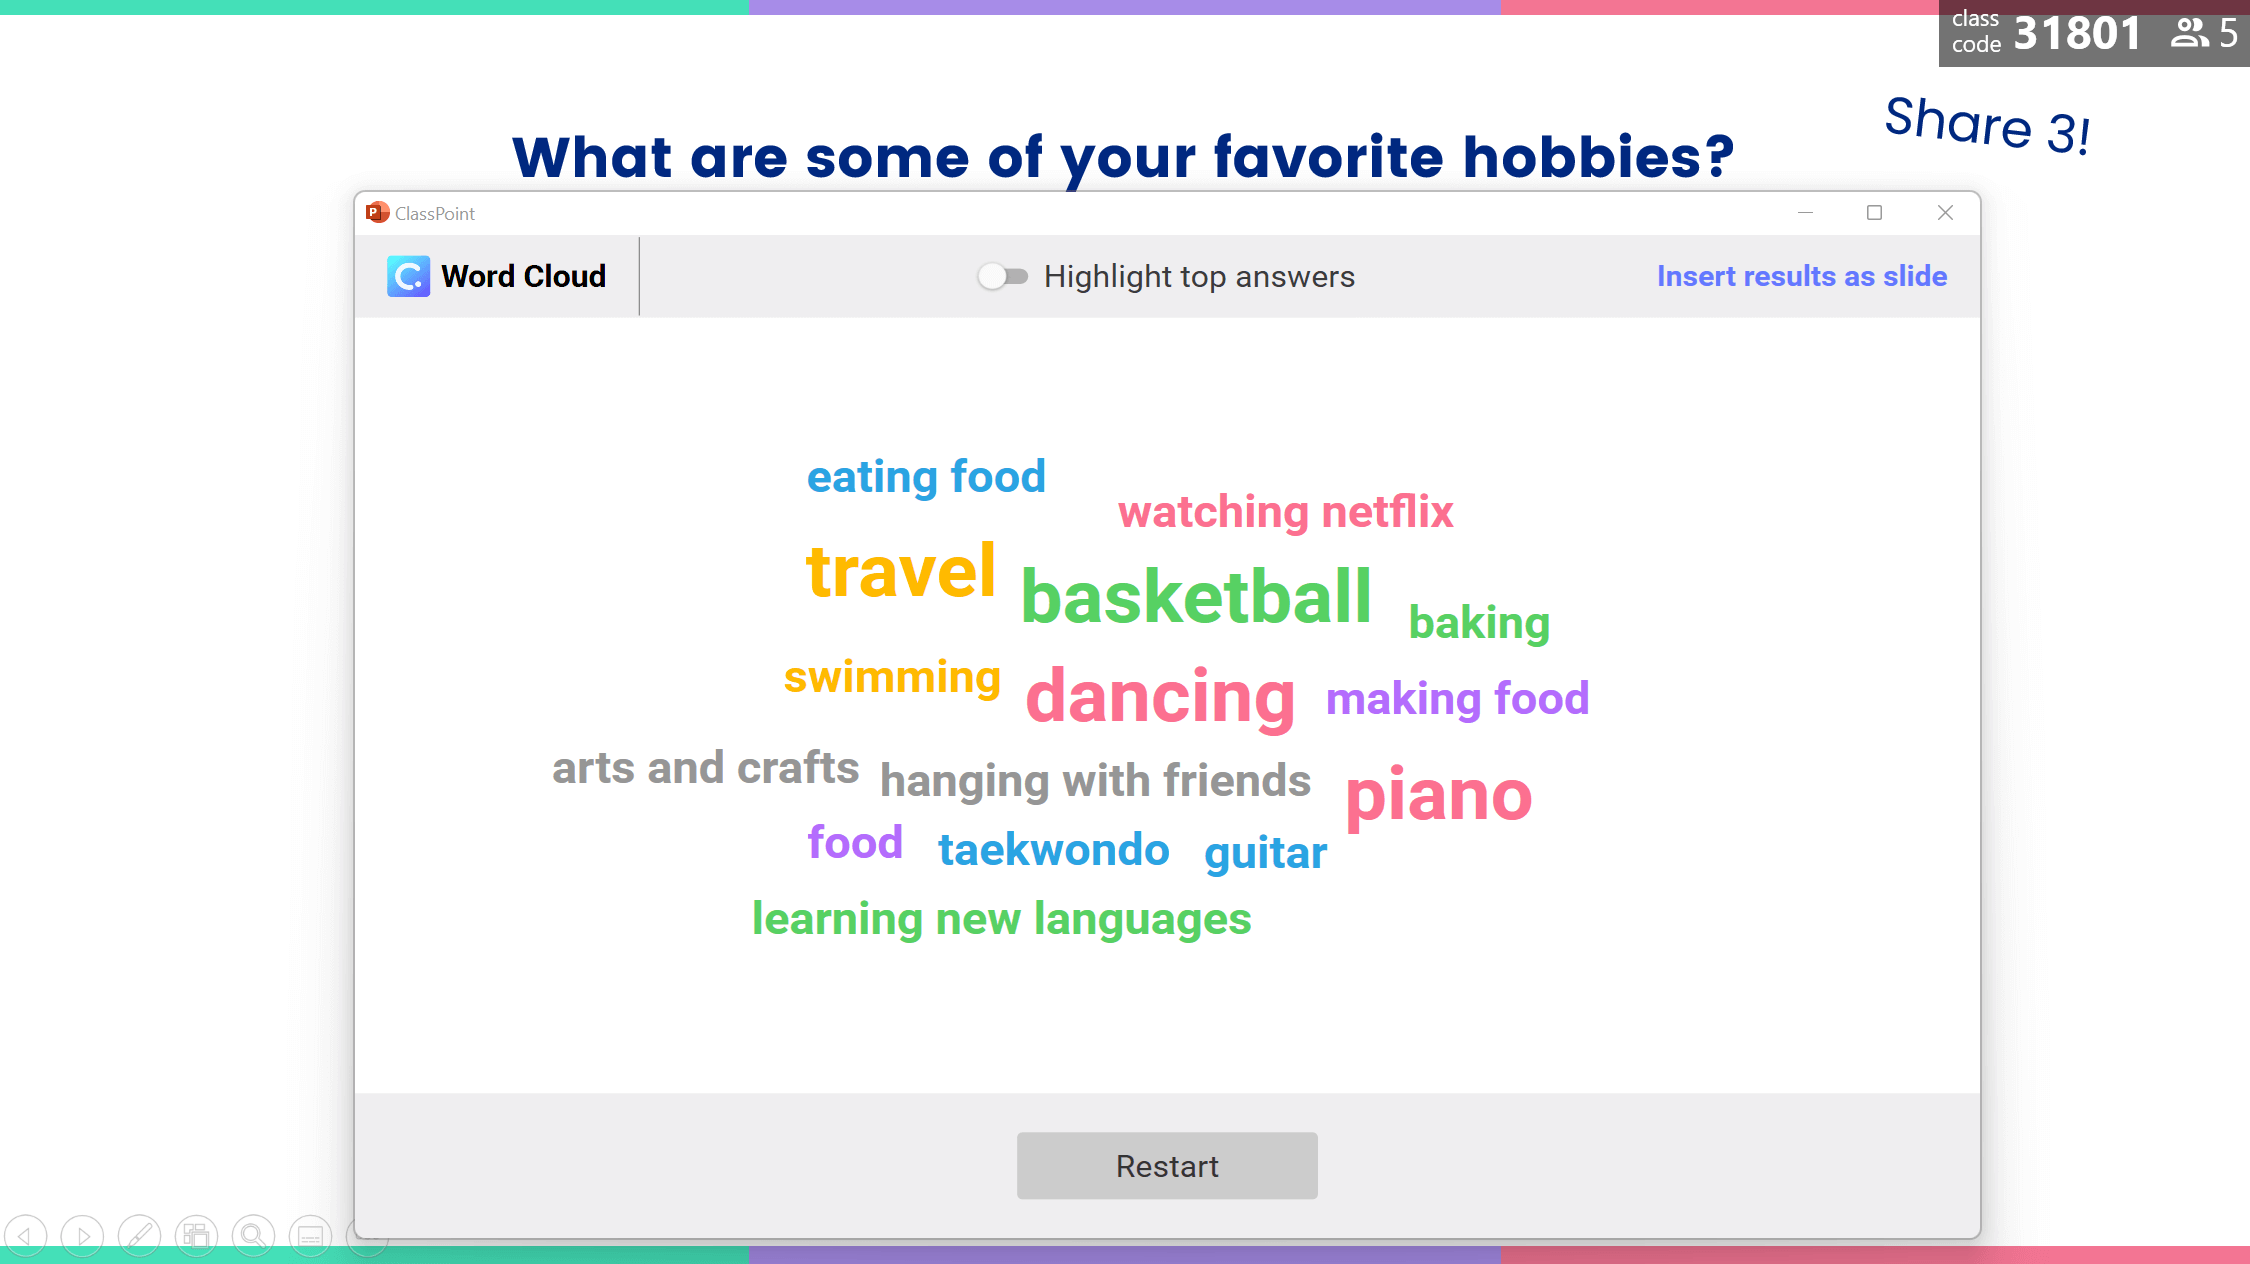 Aktiviti Word Cloud: Apakah hobi kegemaran anda?